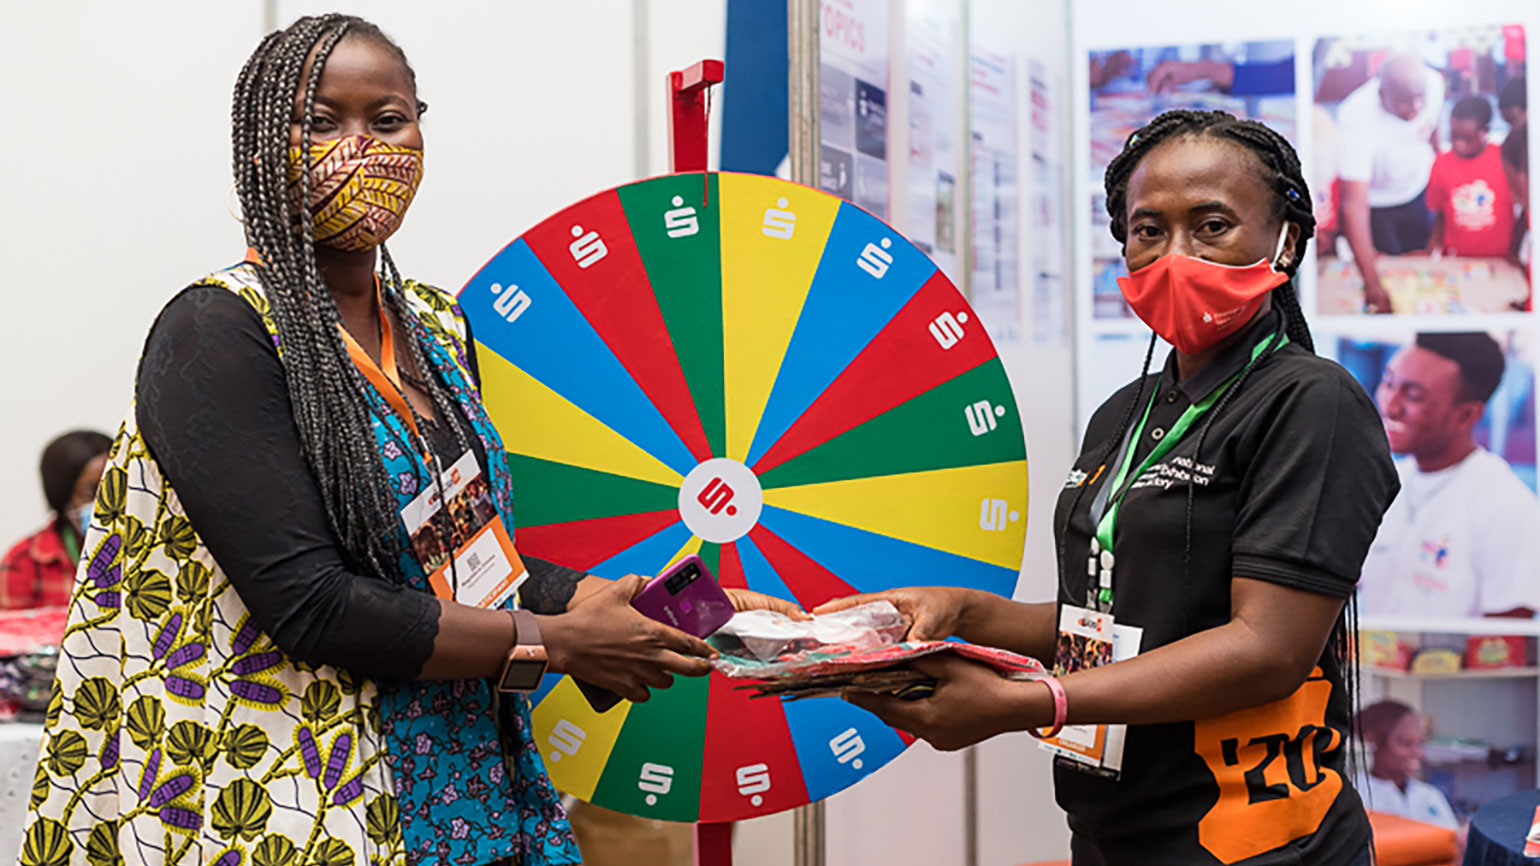 zwei Afrikanerinnen mit Mund-Nasen-Schutz stehen an Glücksrad mit Sparkassen-Logo